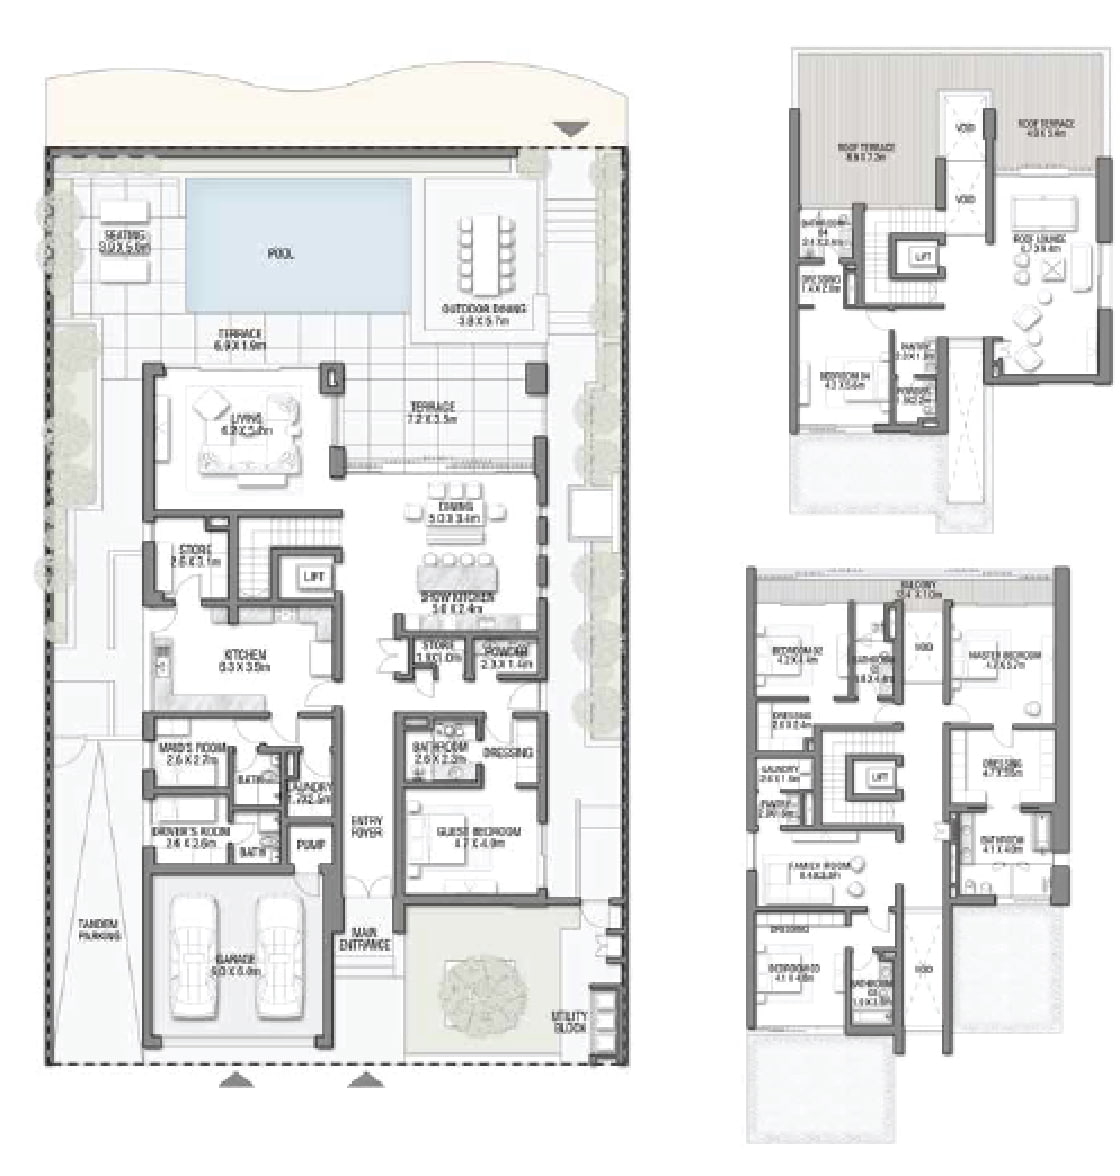 Mediterranean Villas Floor Plan